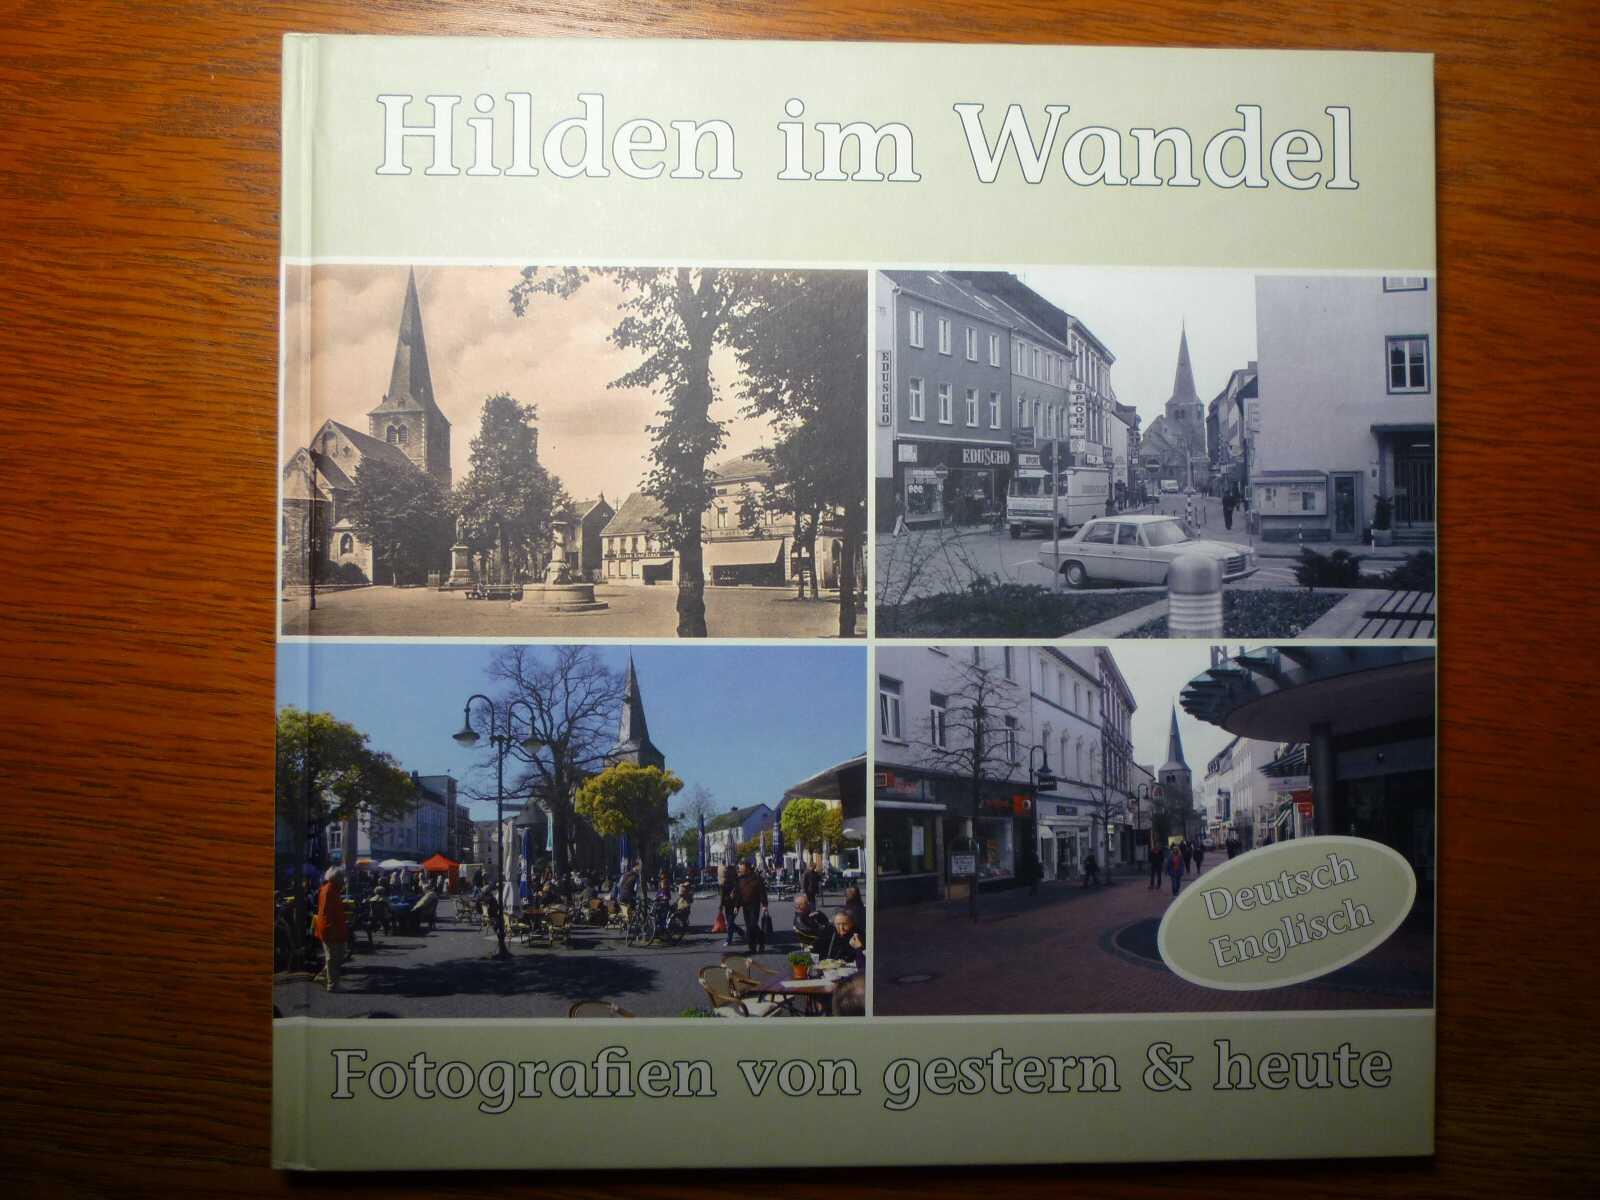 Hilden im Wandel - Fotografien von gestern & heute - 2-sprachig (deutsch, englisch) - Bildband. - Engel, W. (Hrsg.)